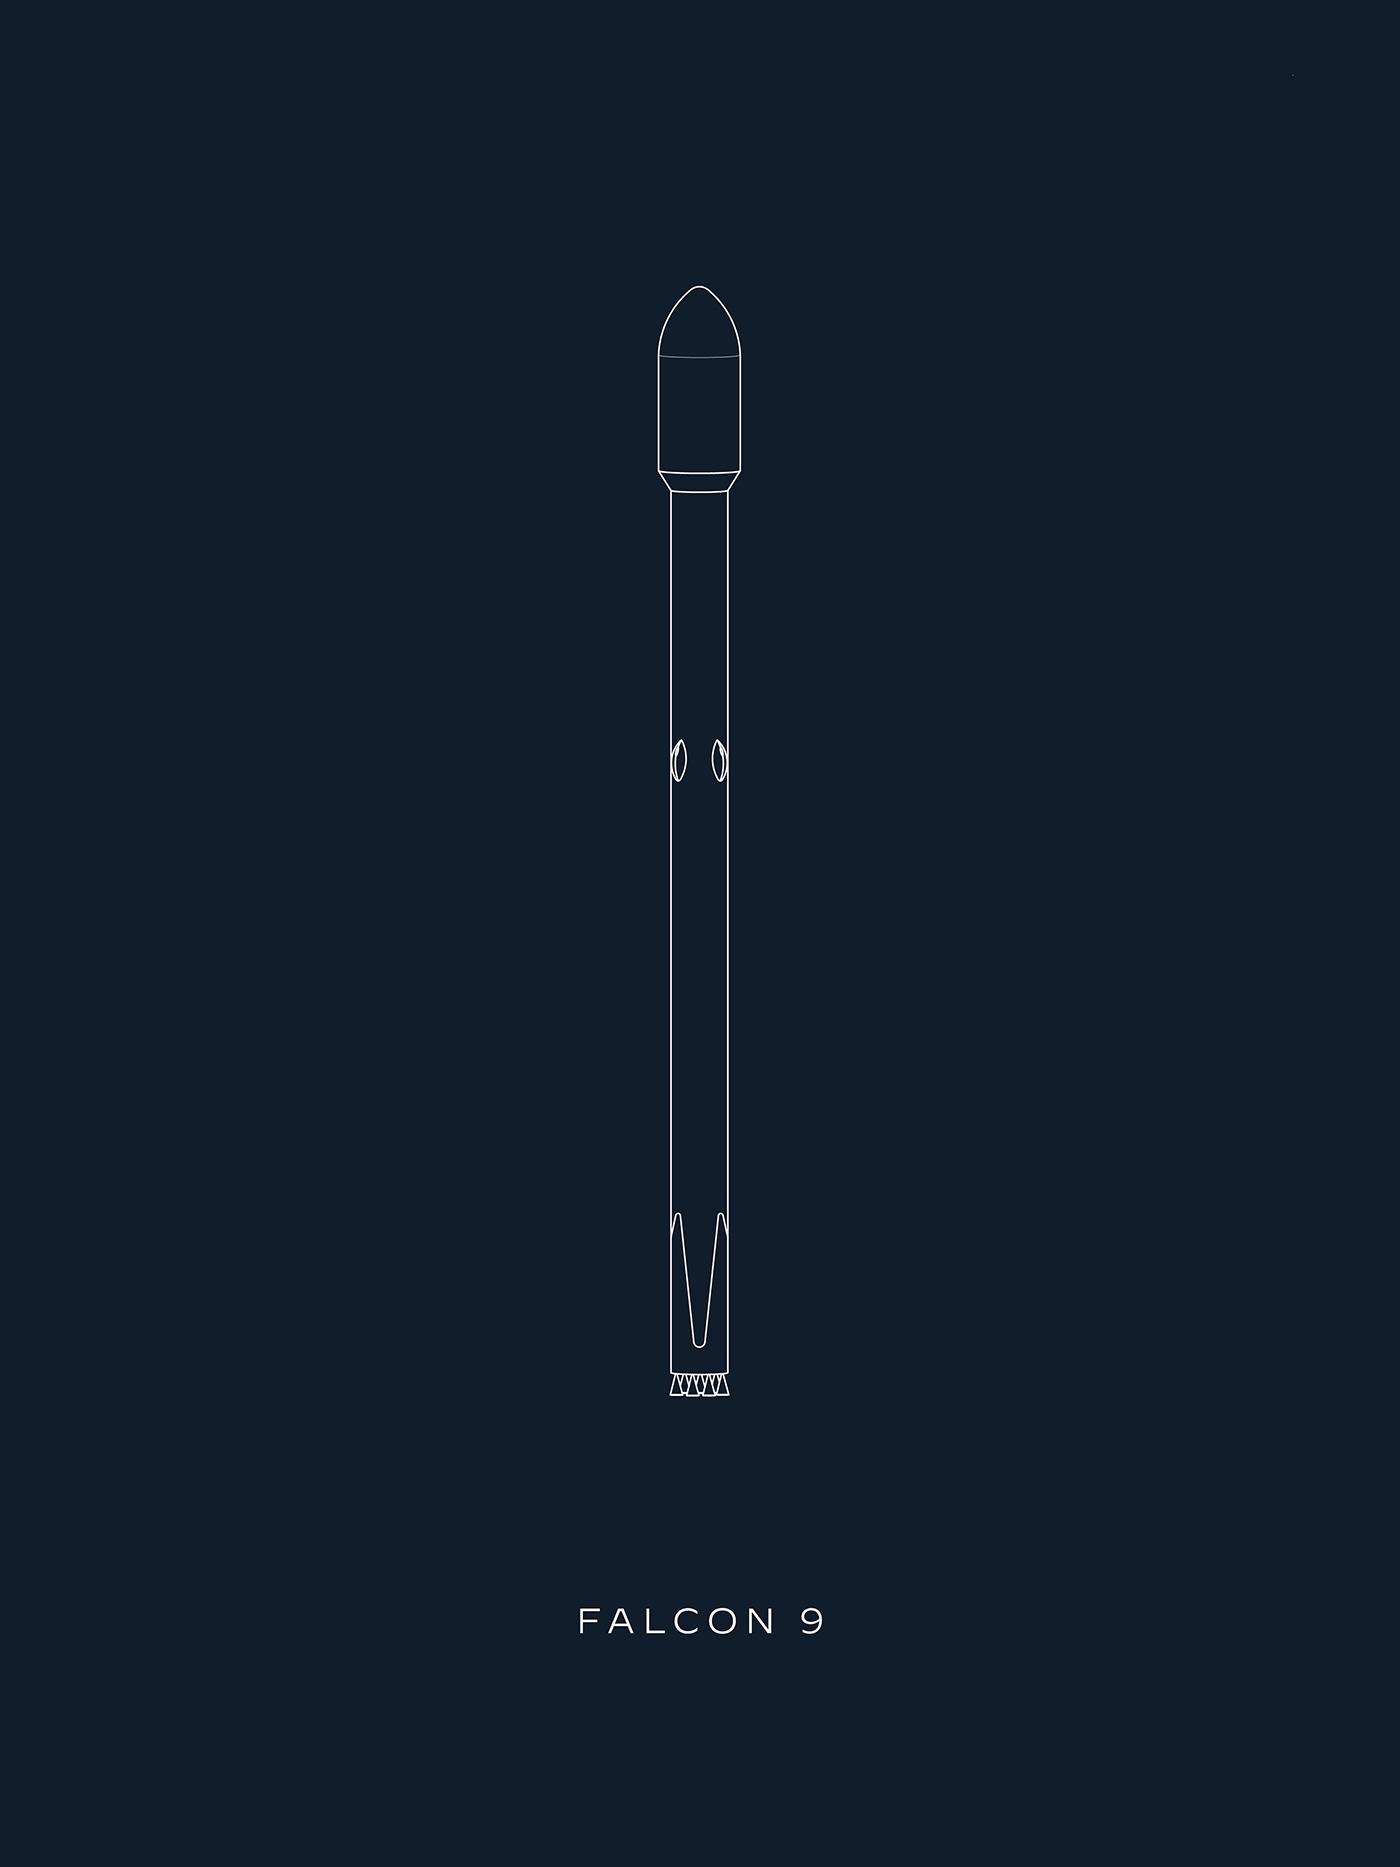 illustration of Falcon 9 rocket